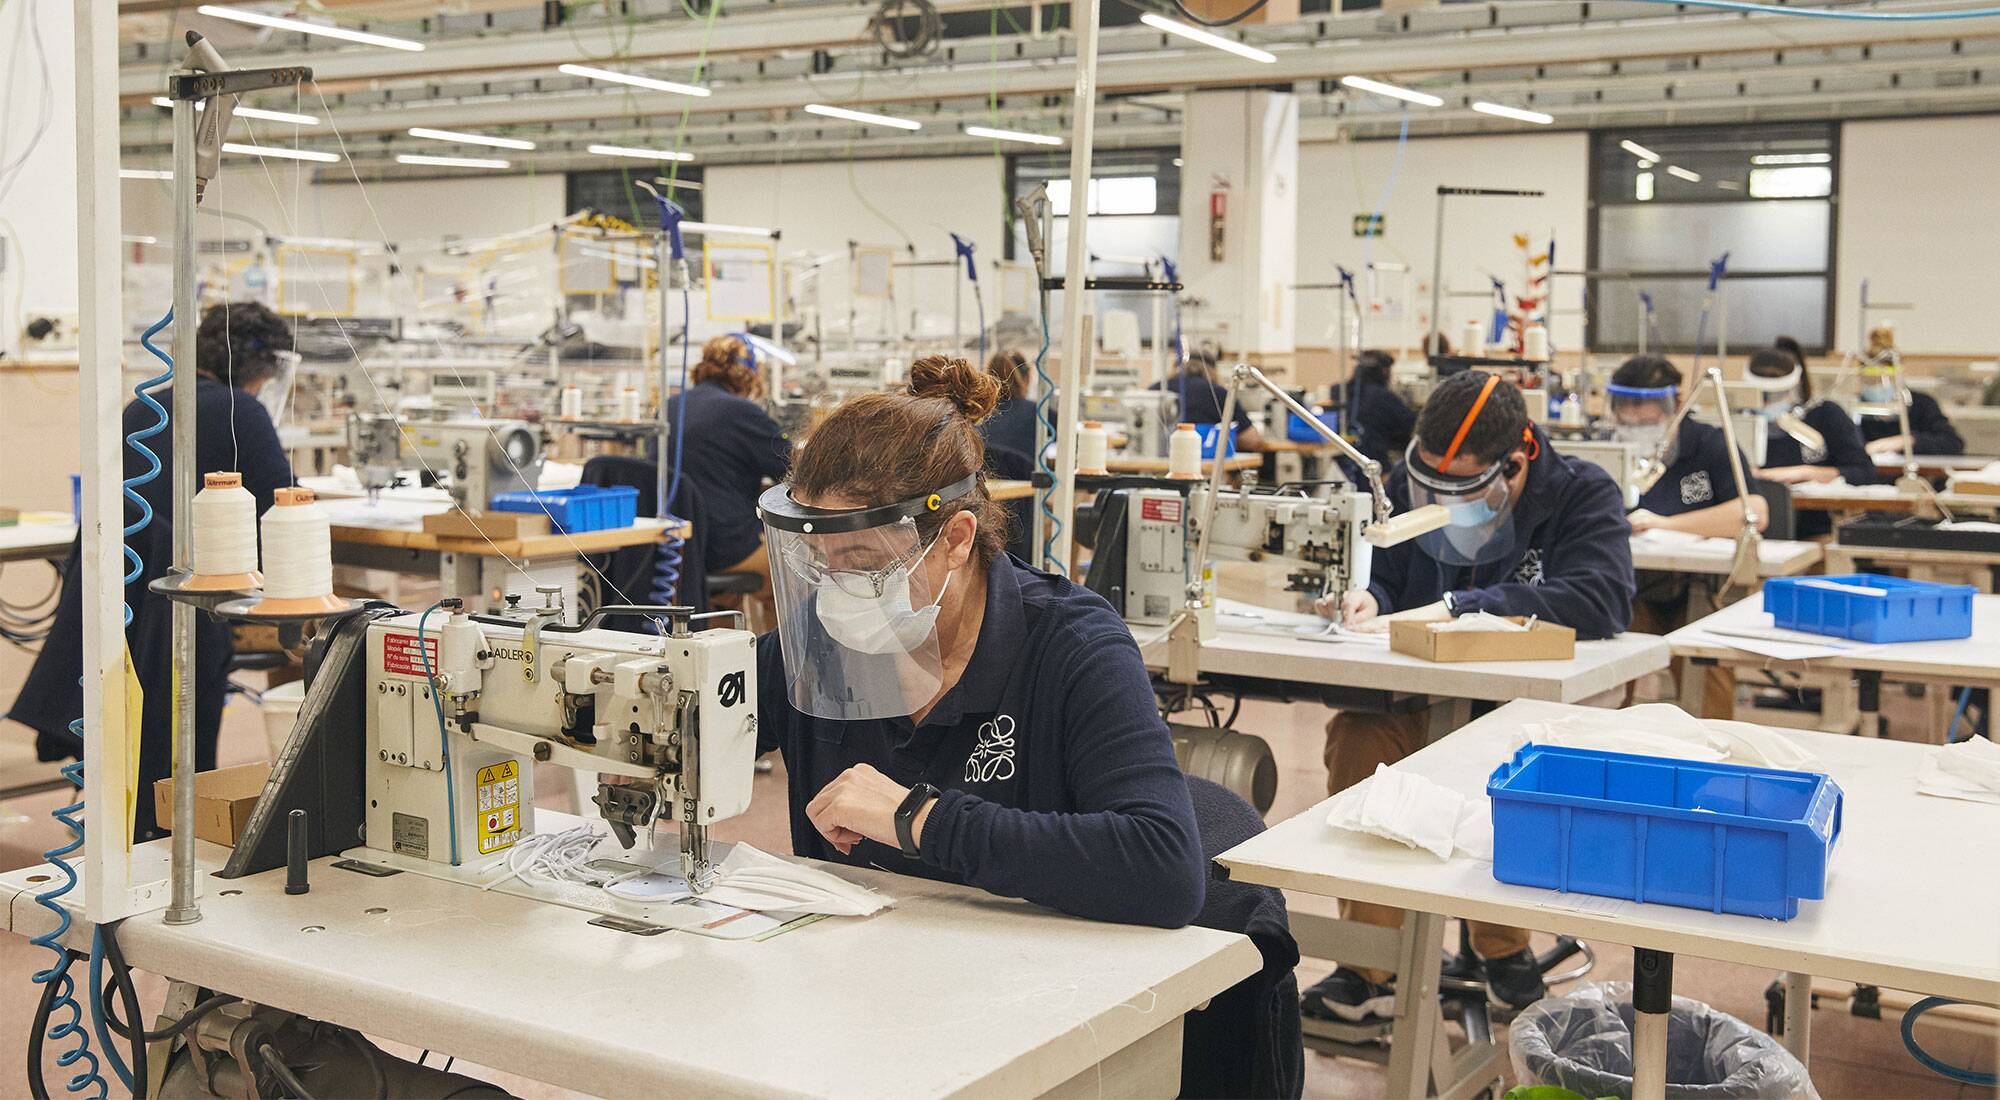 Louis Vuitton, Dior to start making free masks